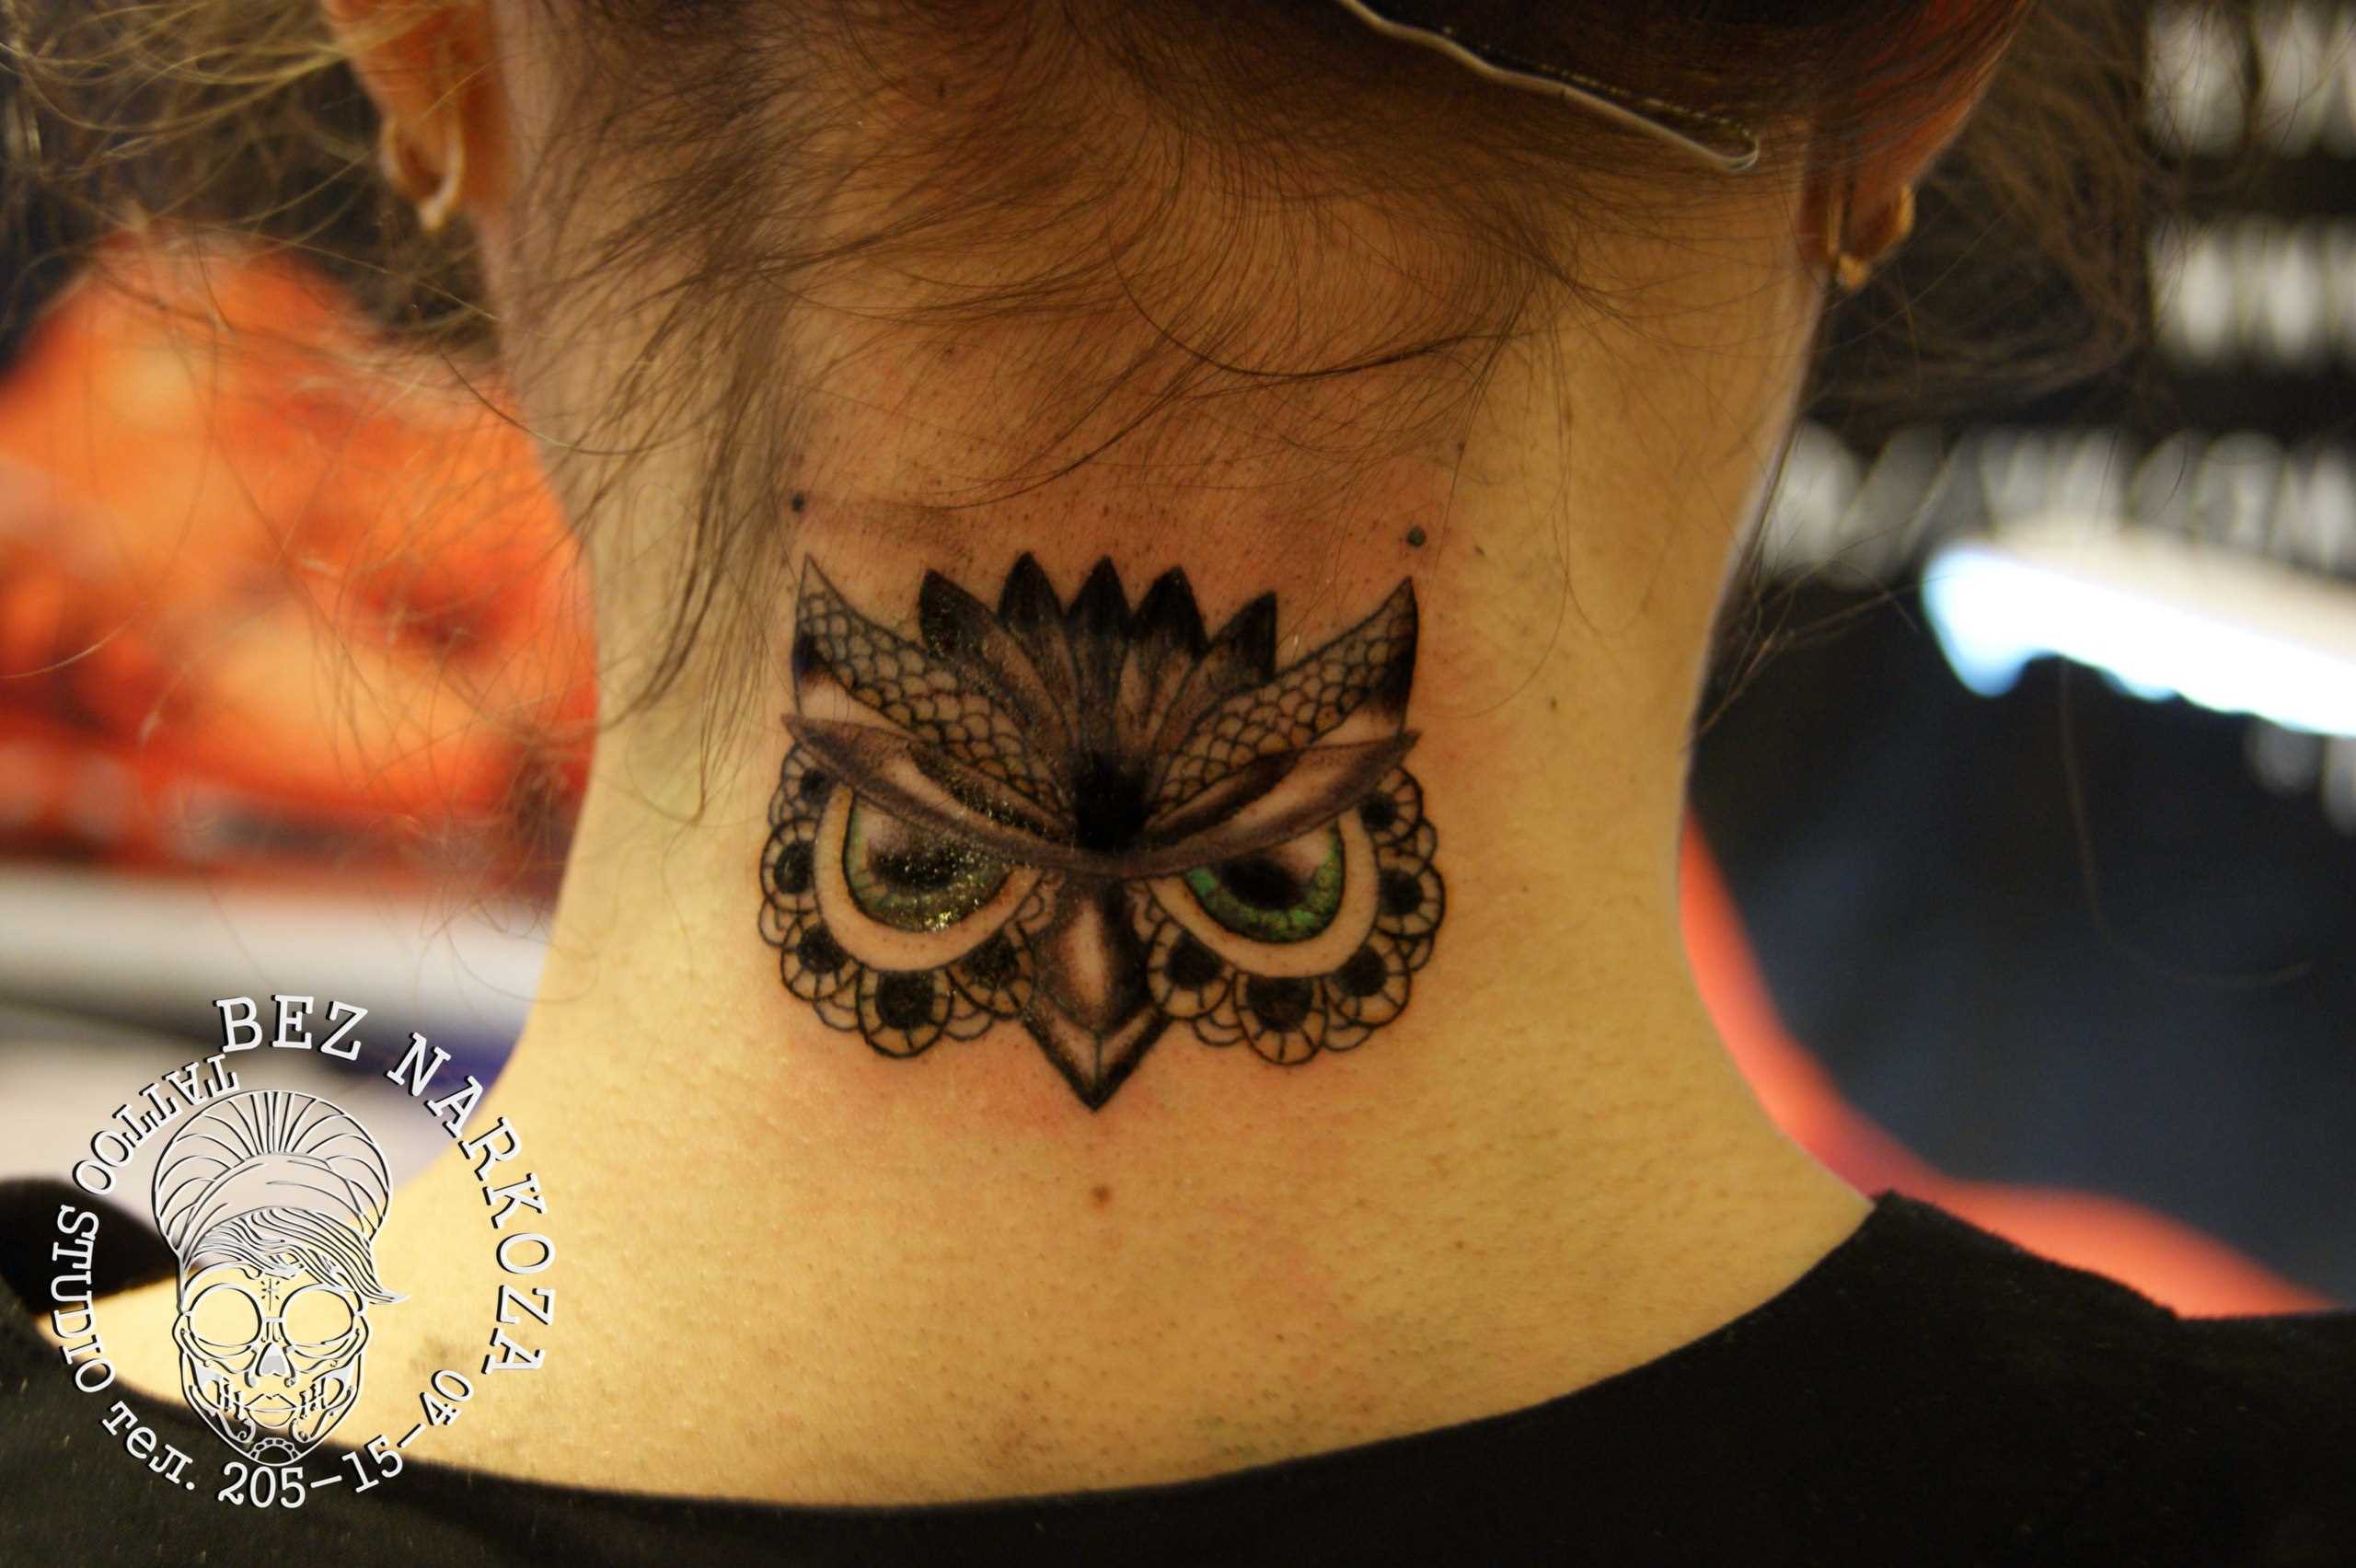 A tatuagem no pescoço da menina - coruja